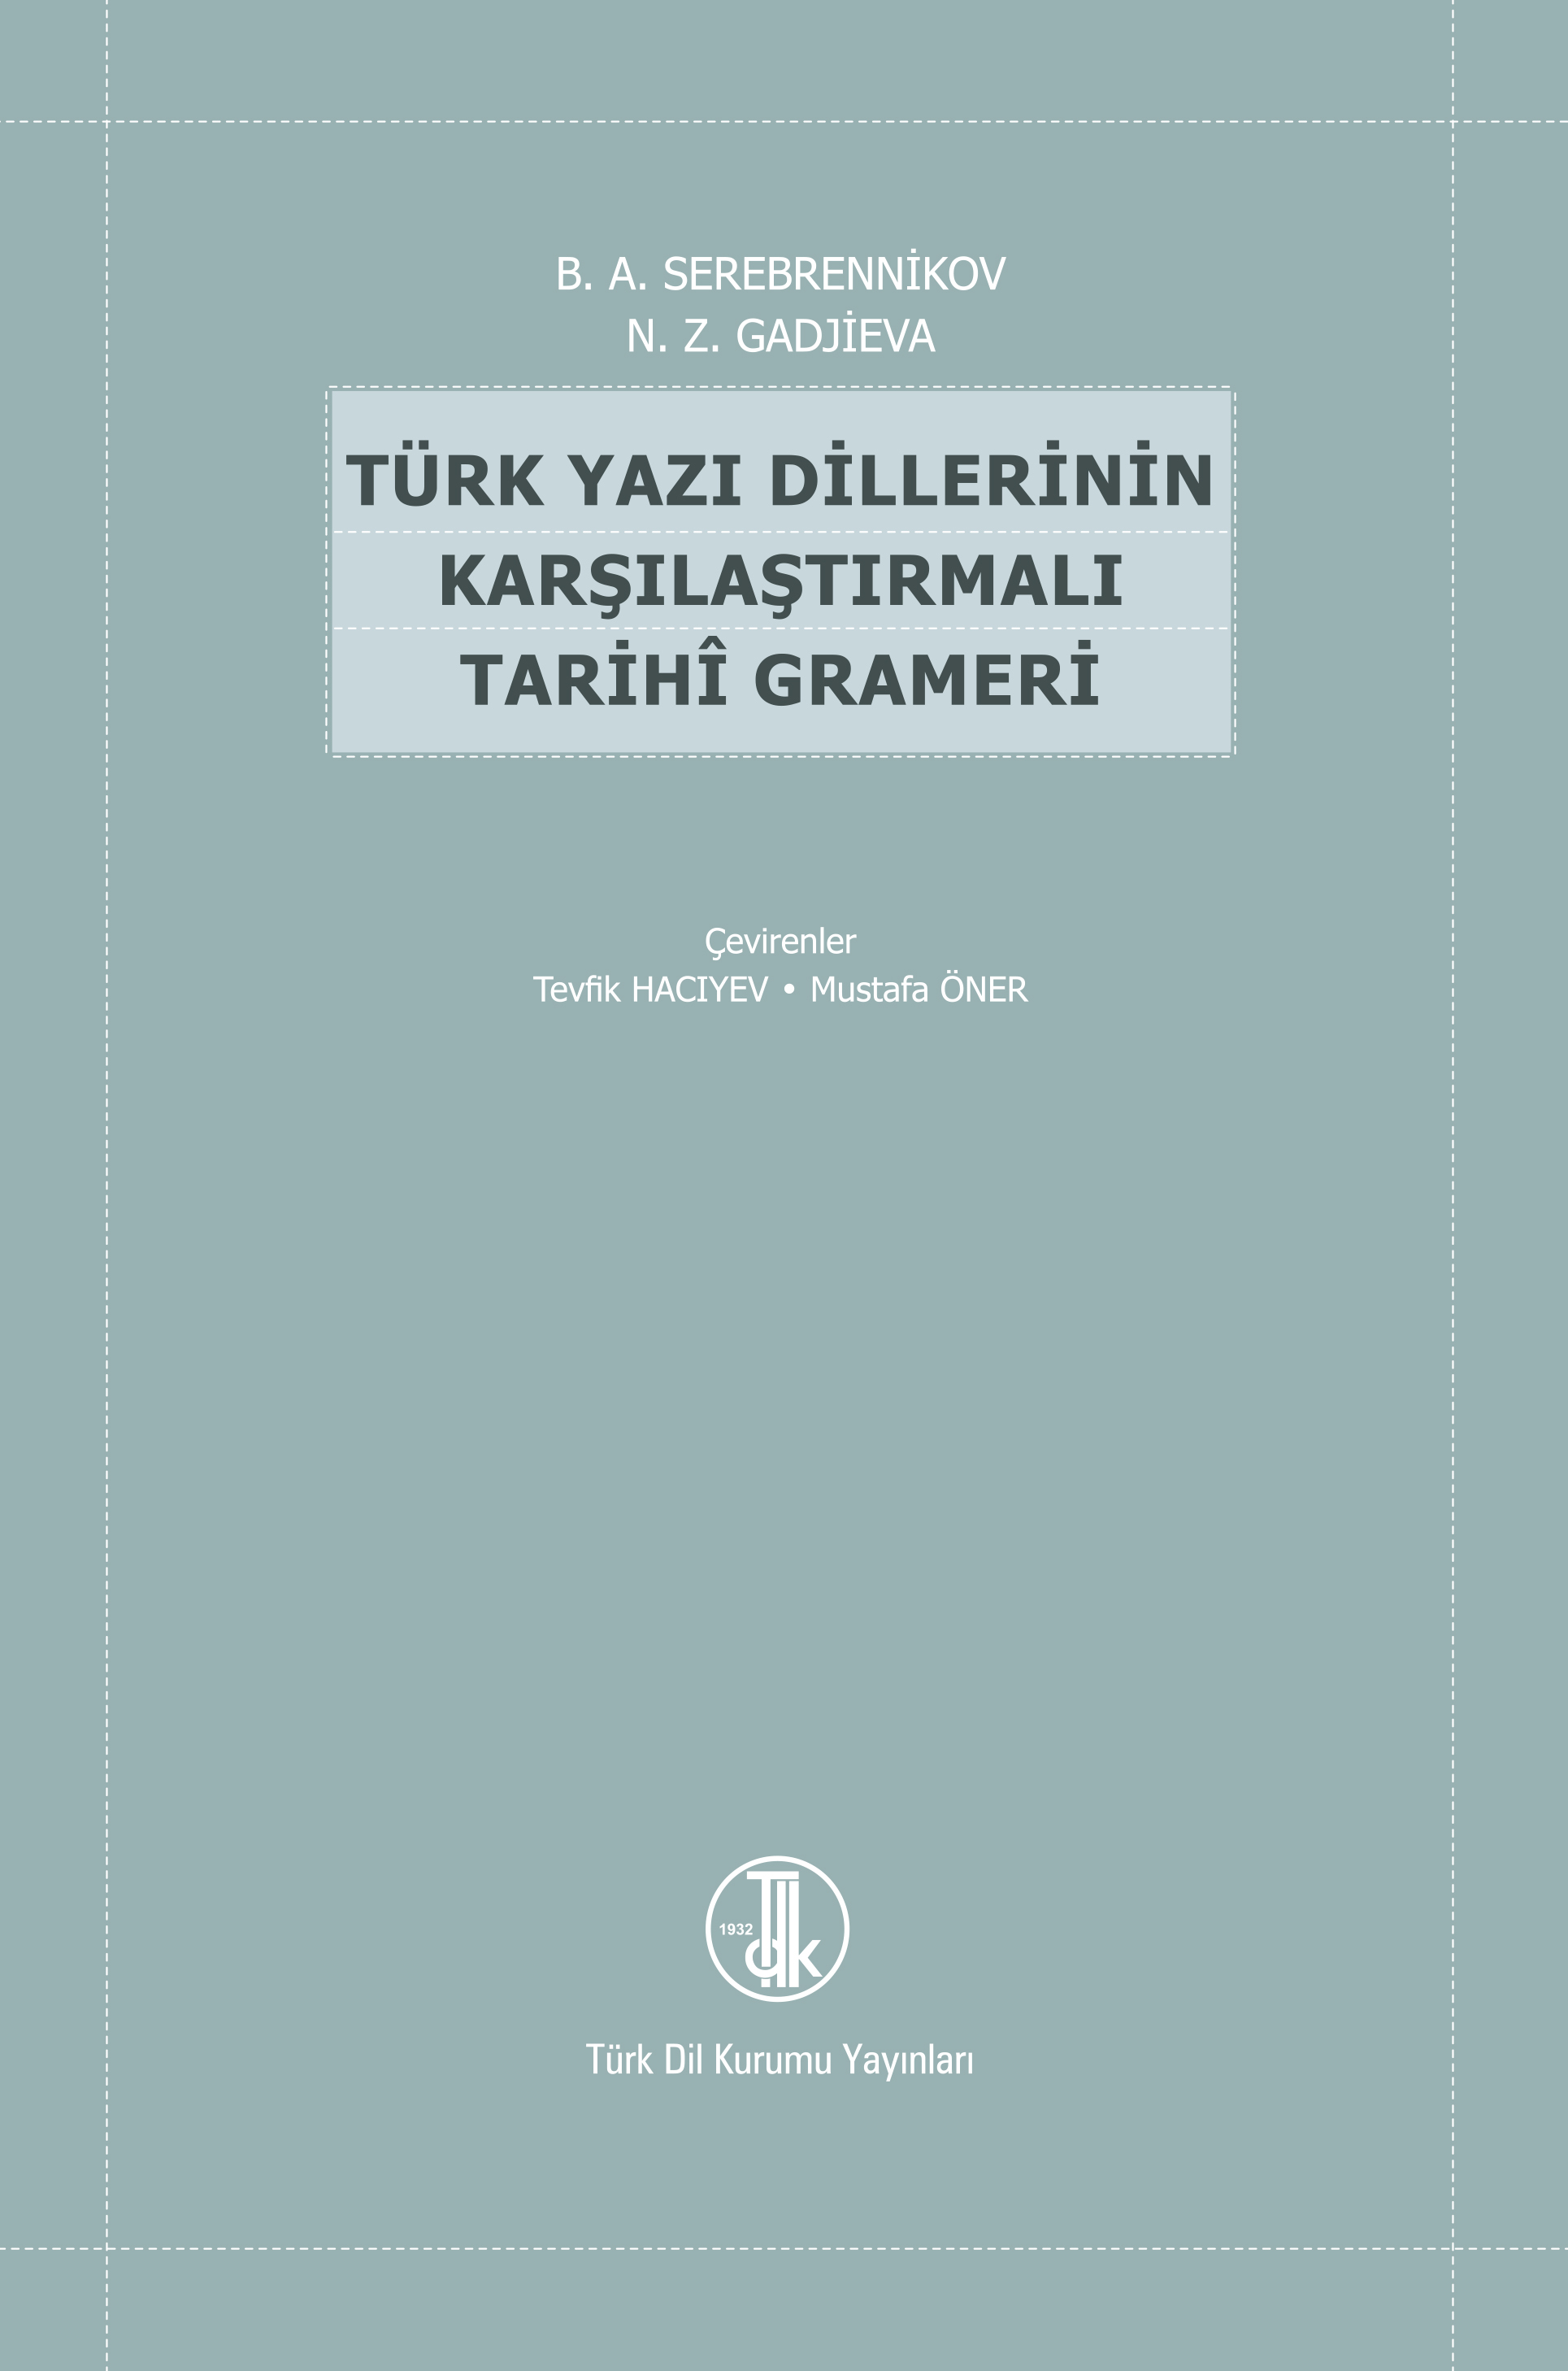 Türk Yazı Dillerinin Karşılaştırmalı Tarihî Grameri, 2022